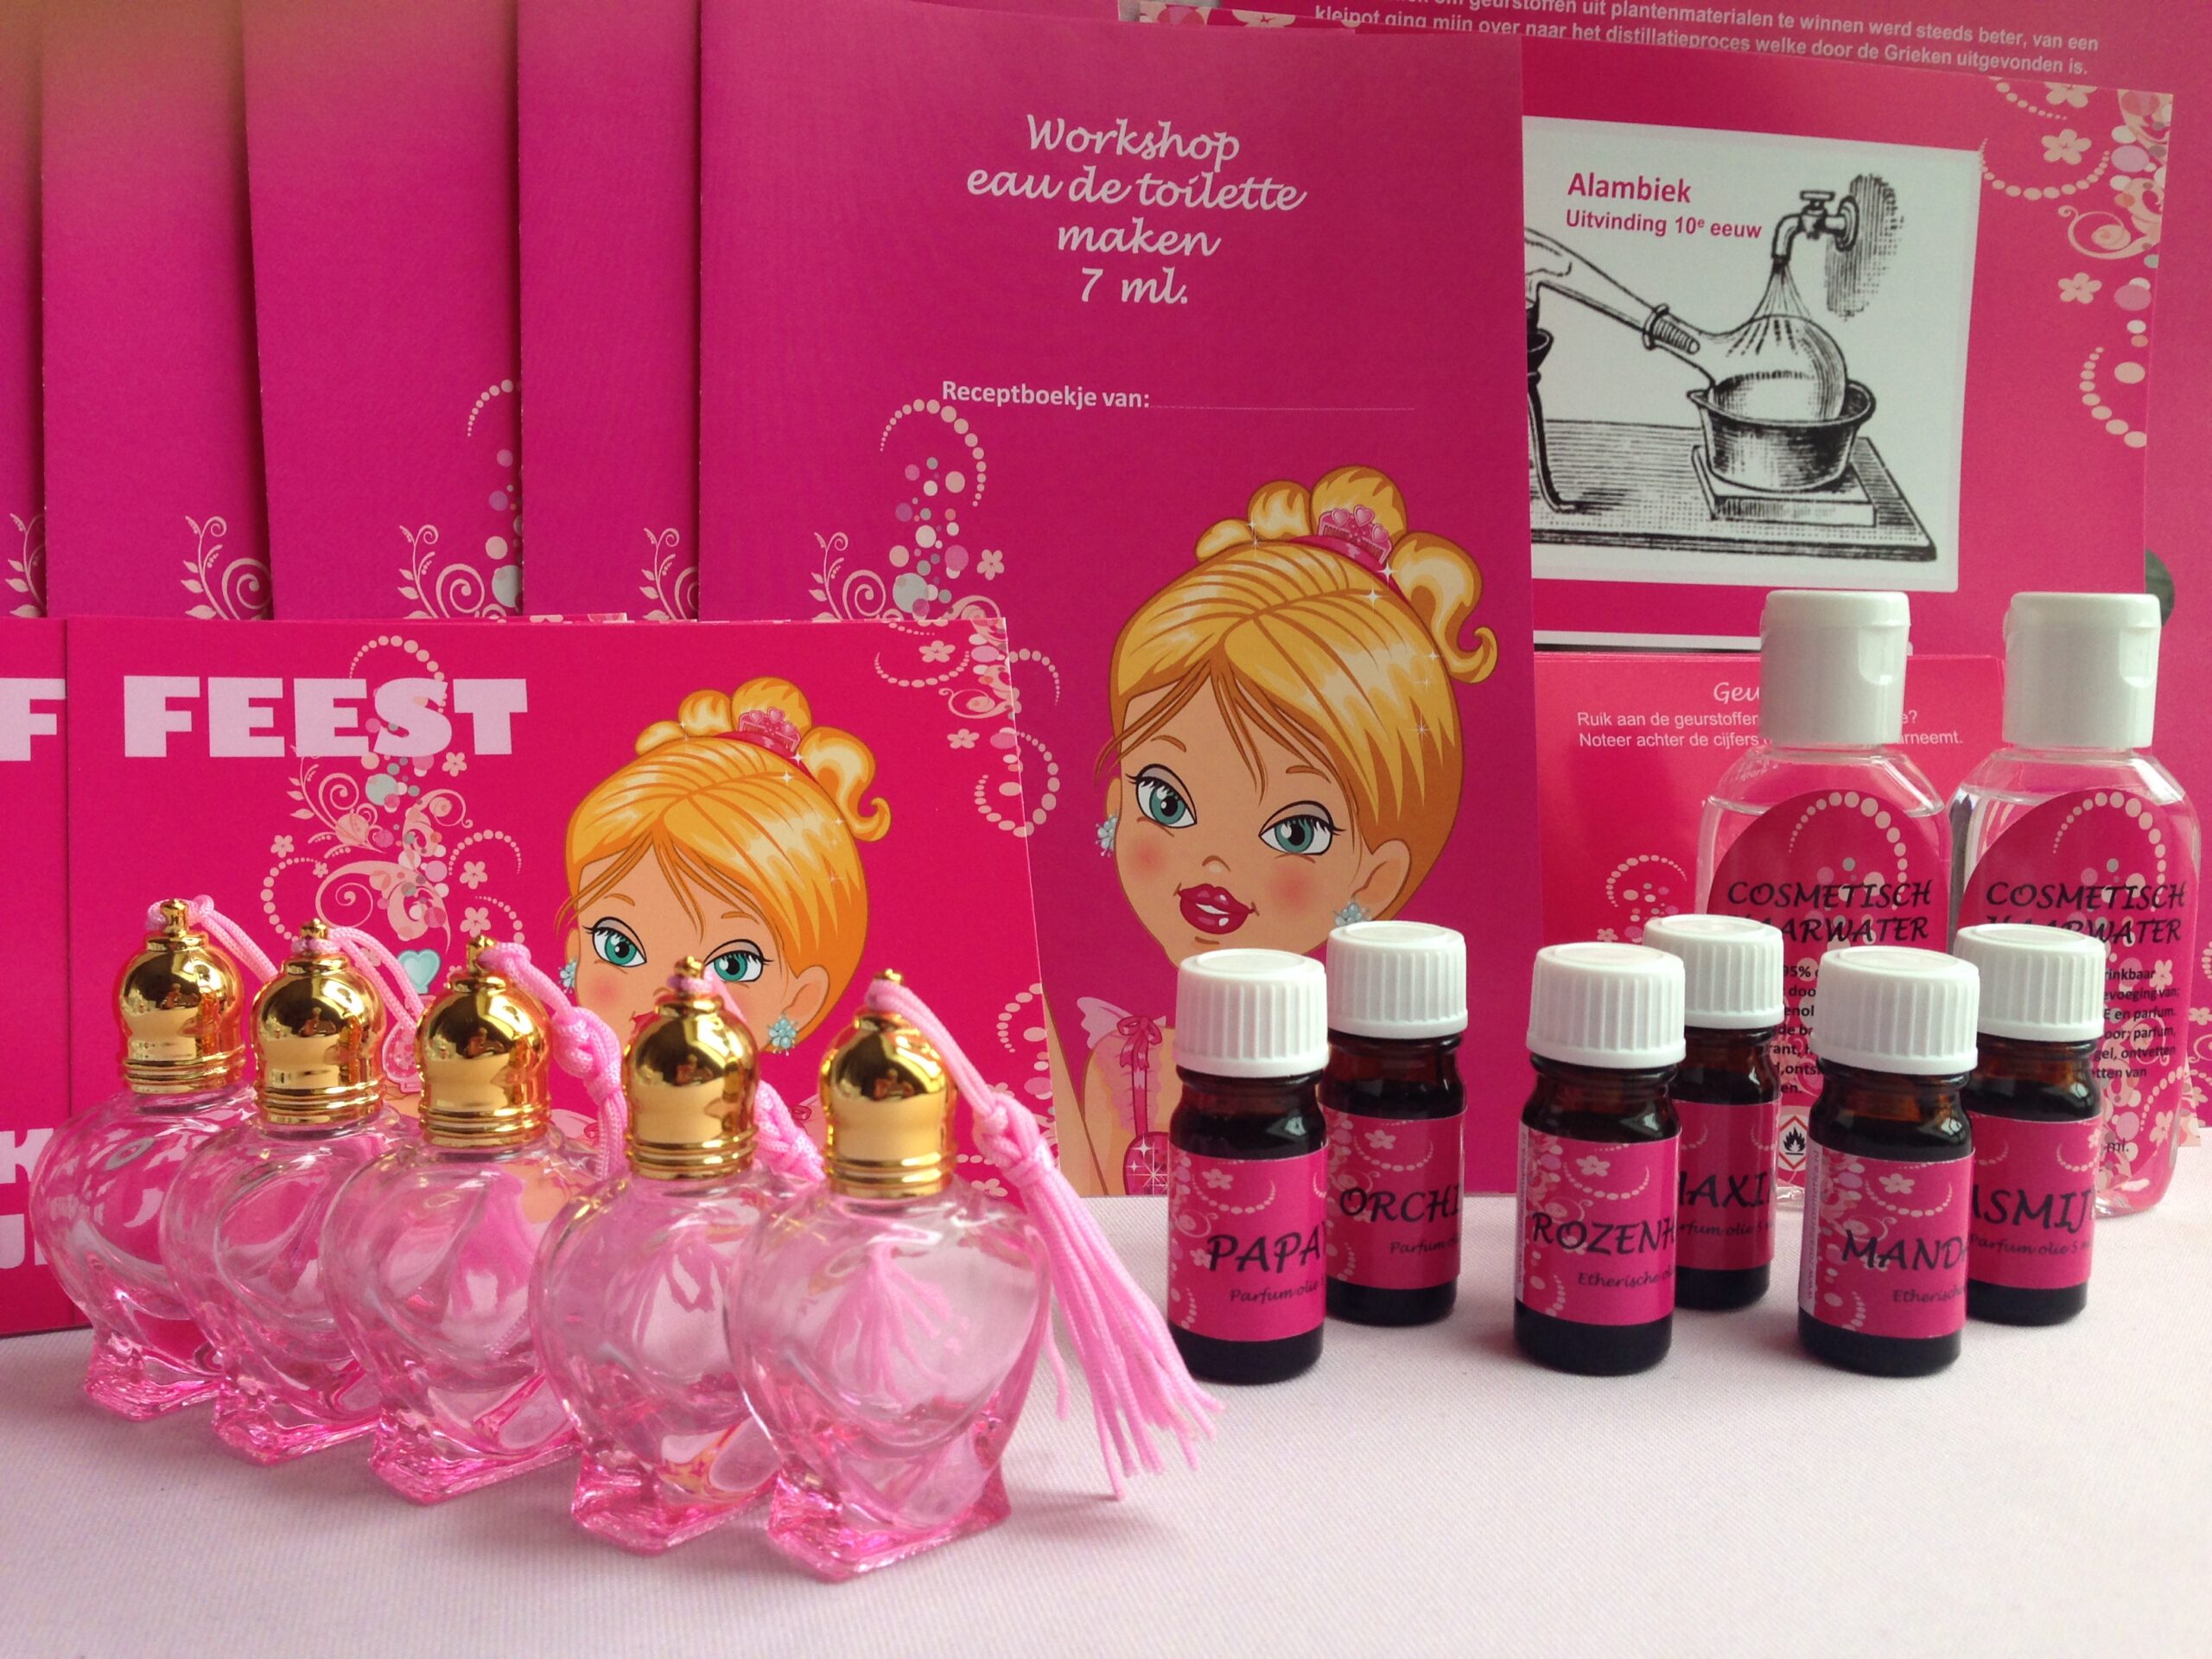 Fantastisch compleet thuis workshop pakket parfum maken voor 5 kinderen met uitbreidings mogelijkheden.